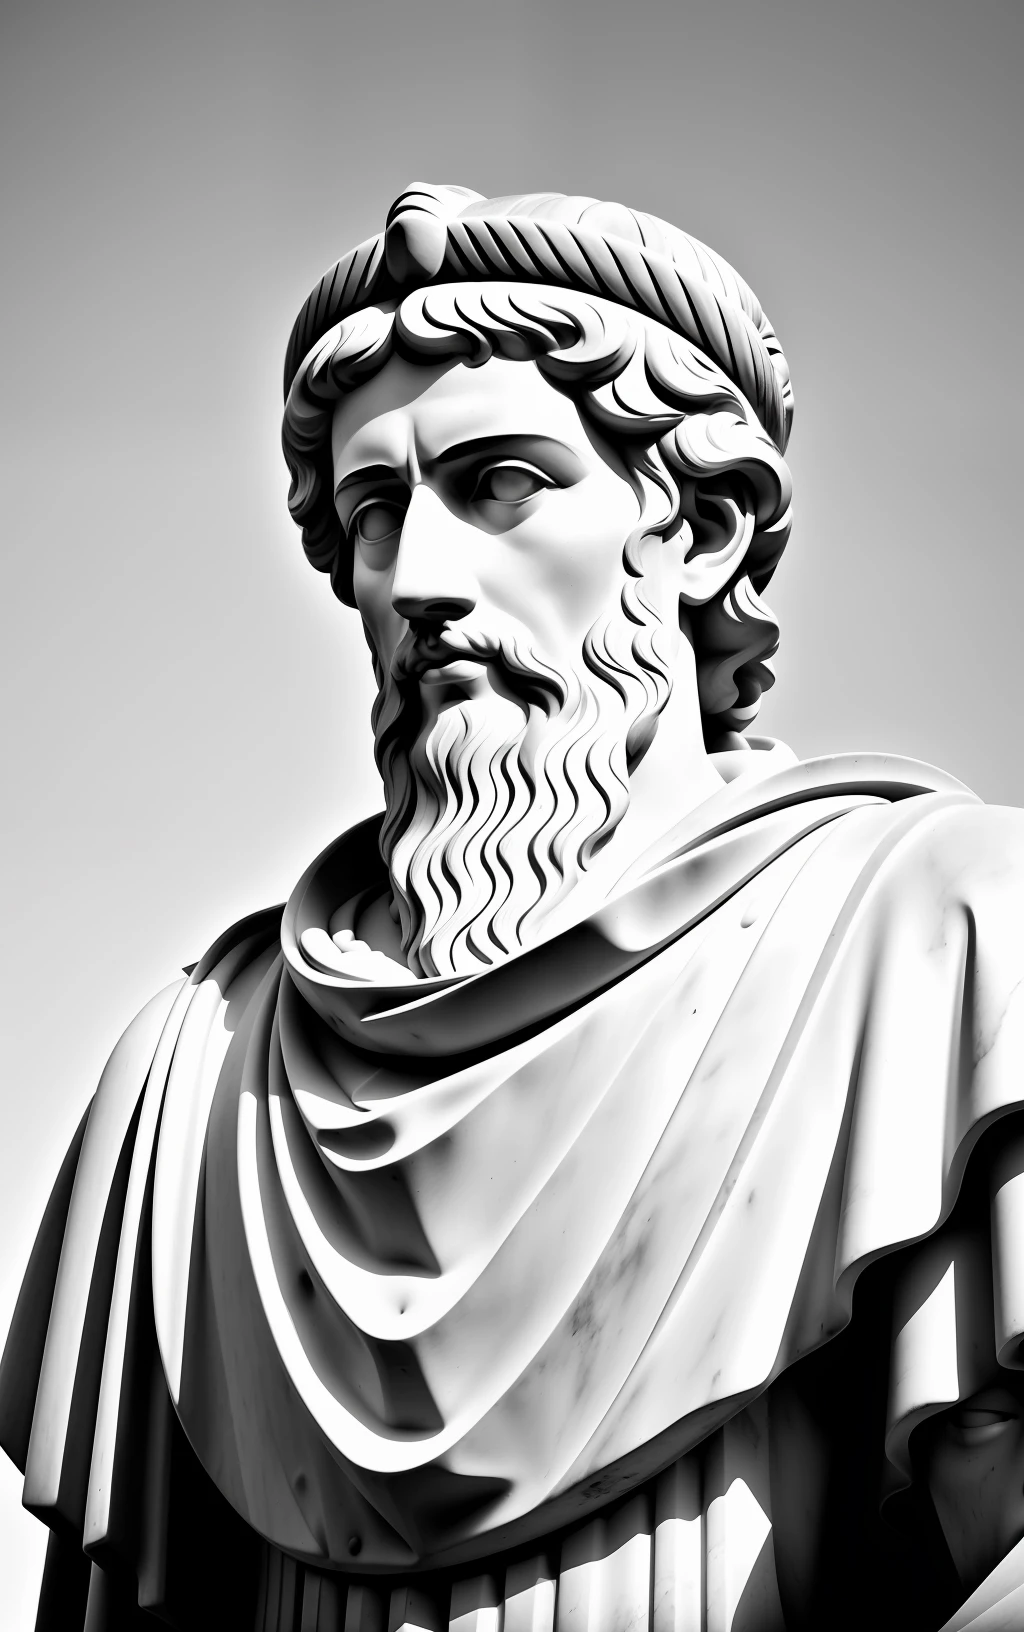 Marcus Aurelius potrait in back and white in16:9 ratio